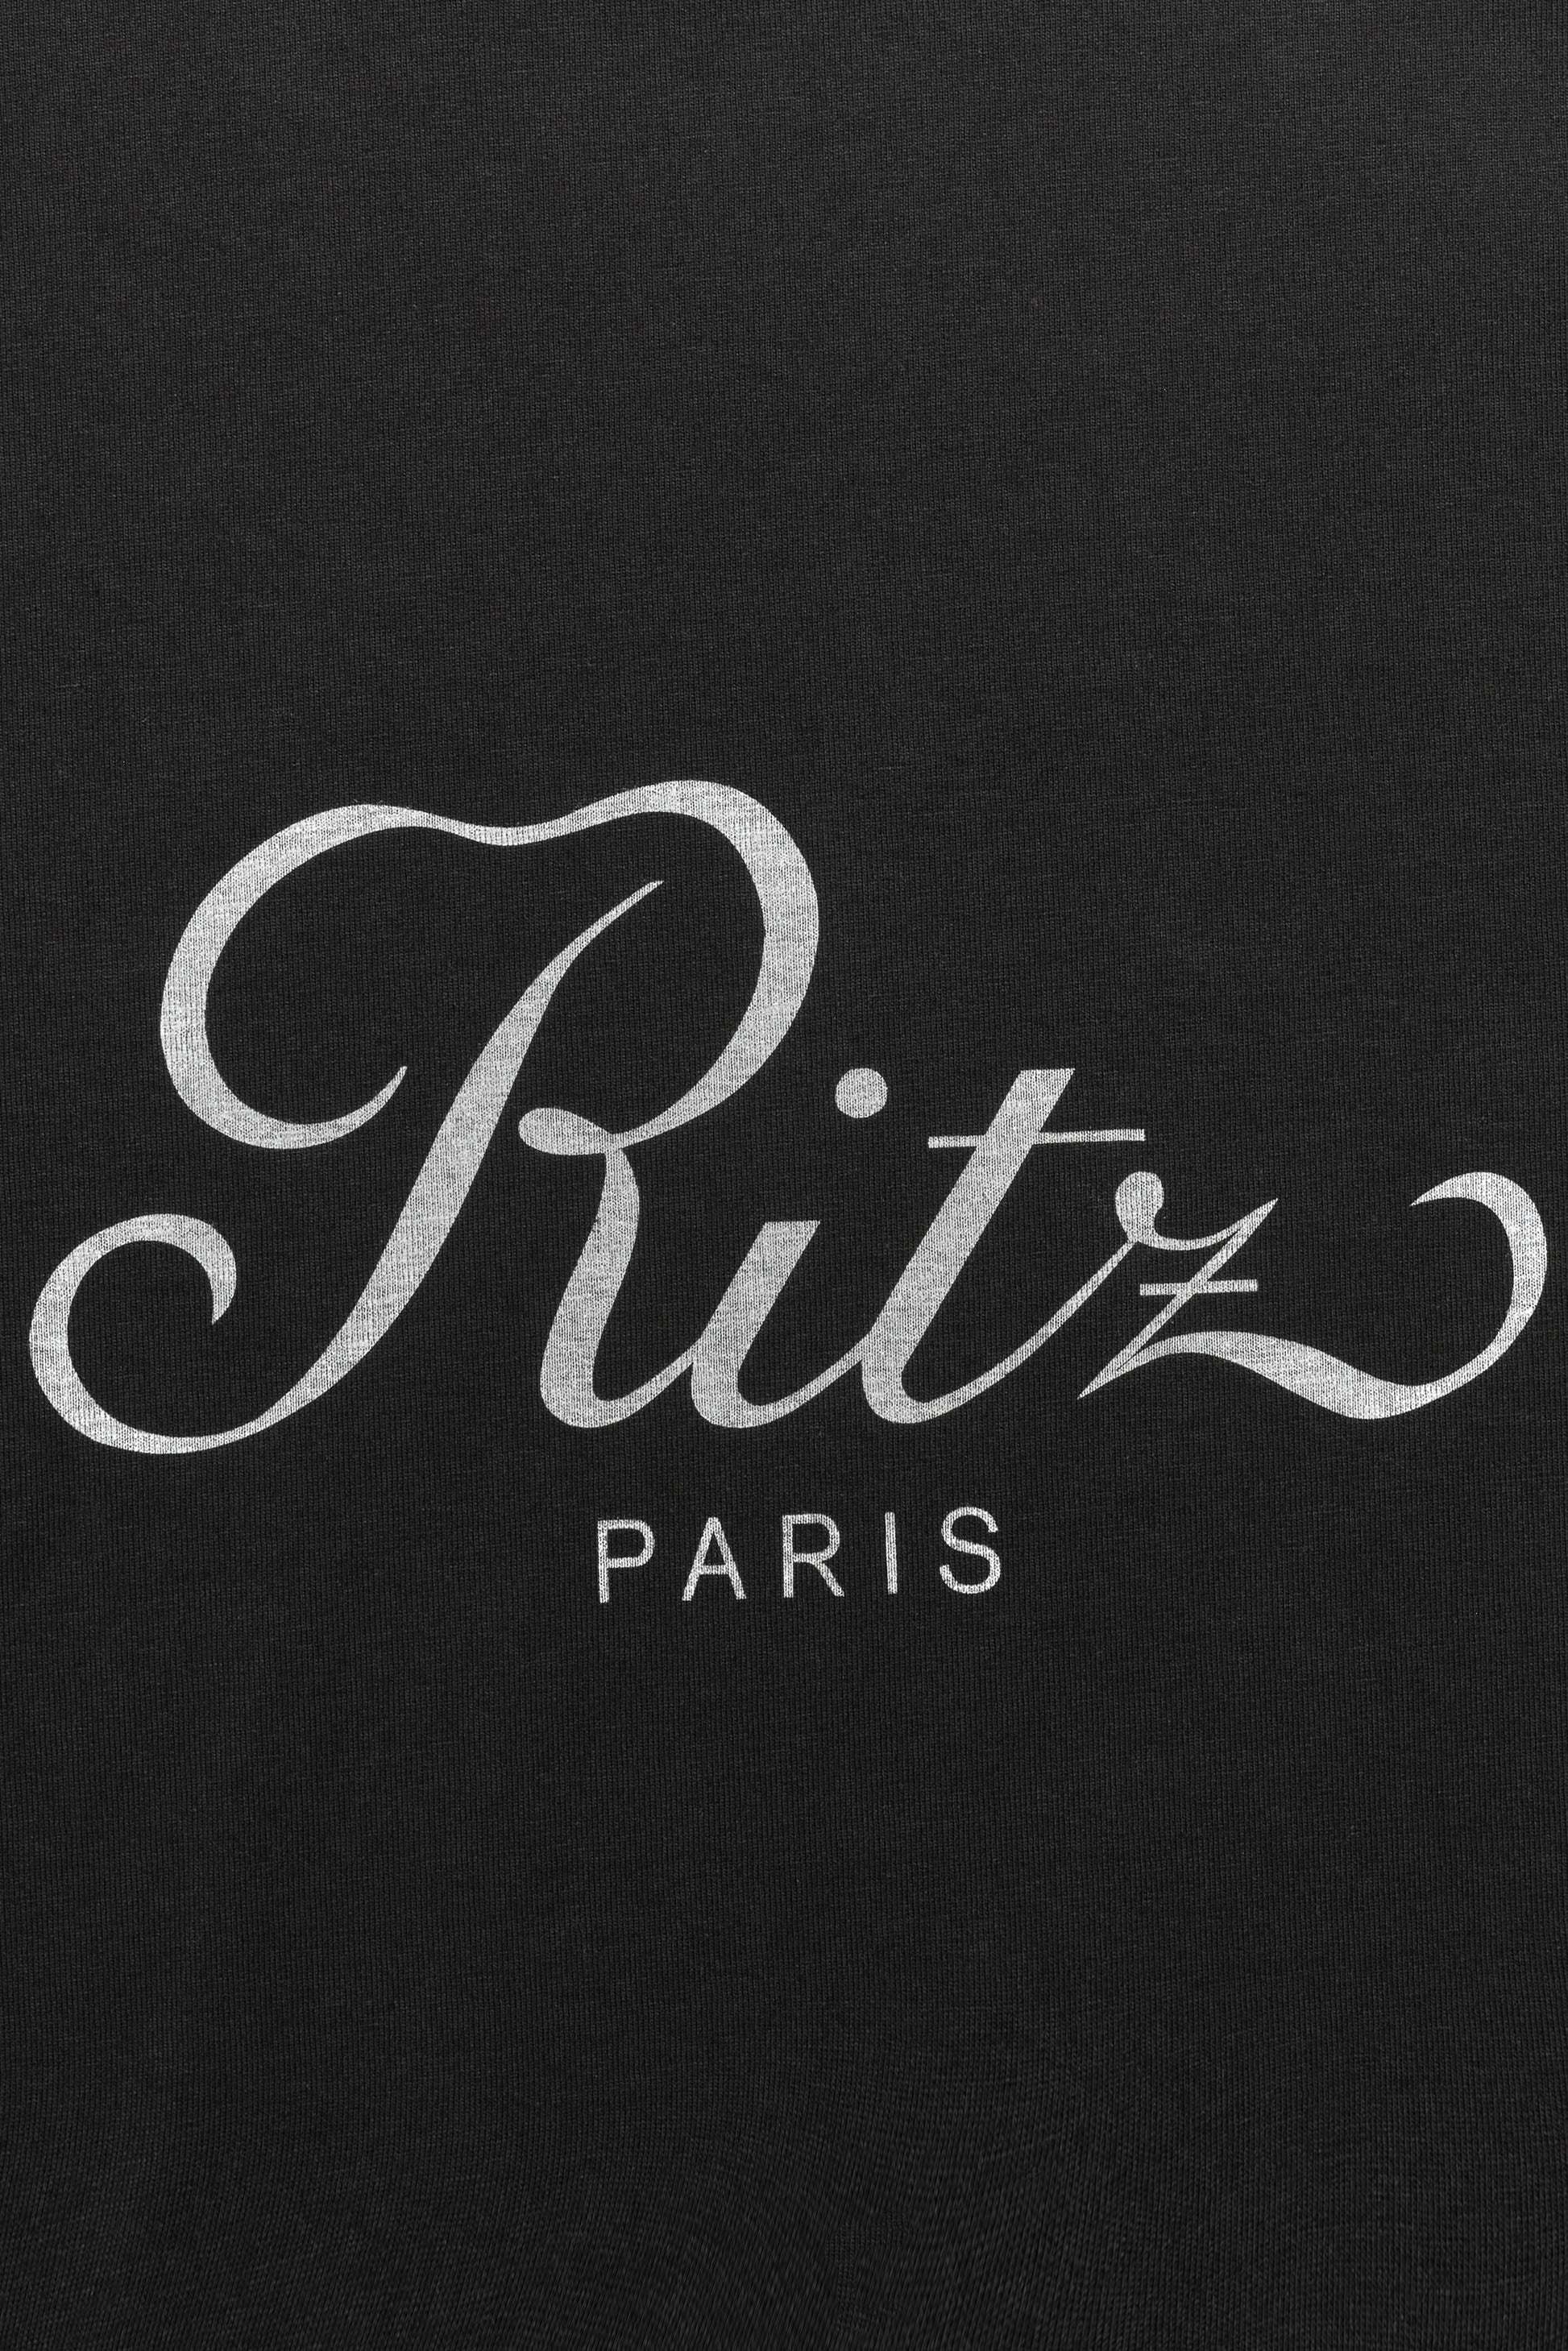 T-Shirt in SchwarzFrame x Ritz Paris - Anita Hass